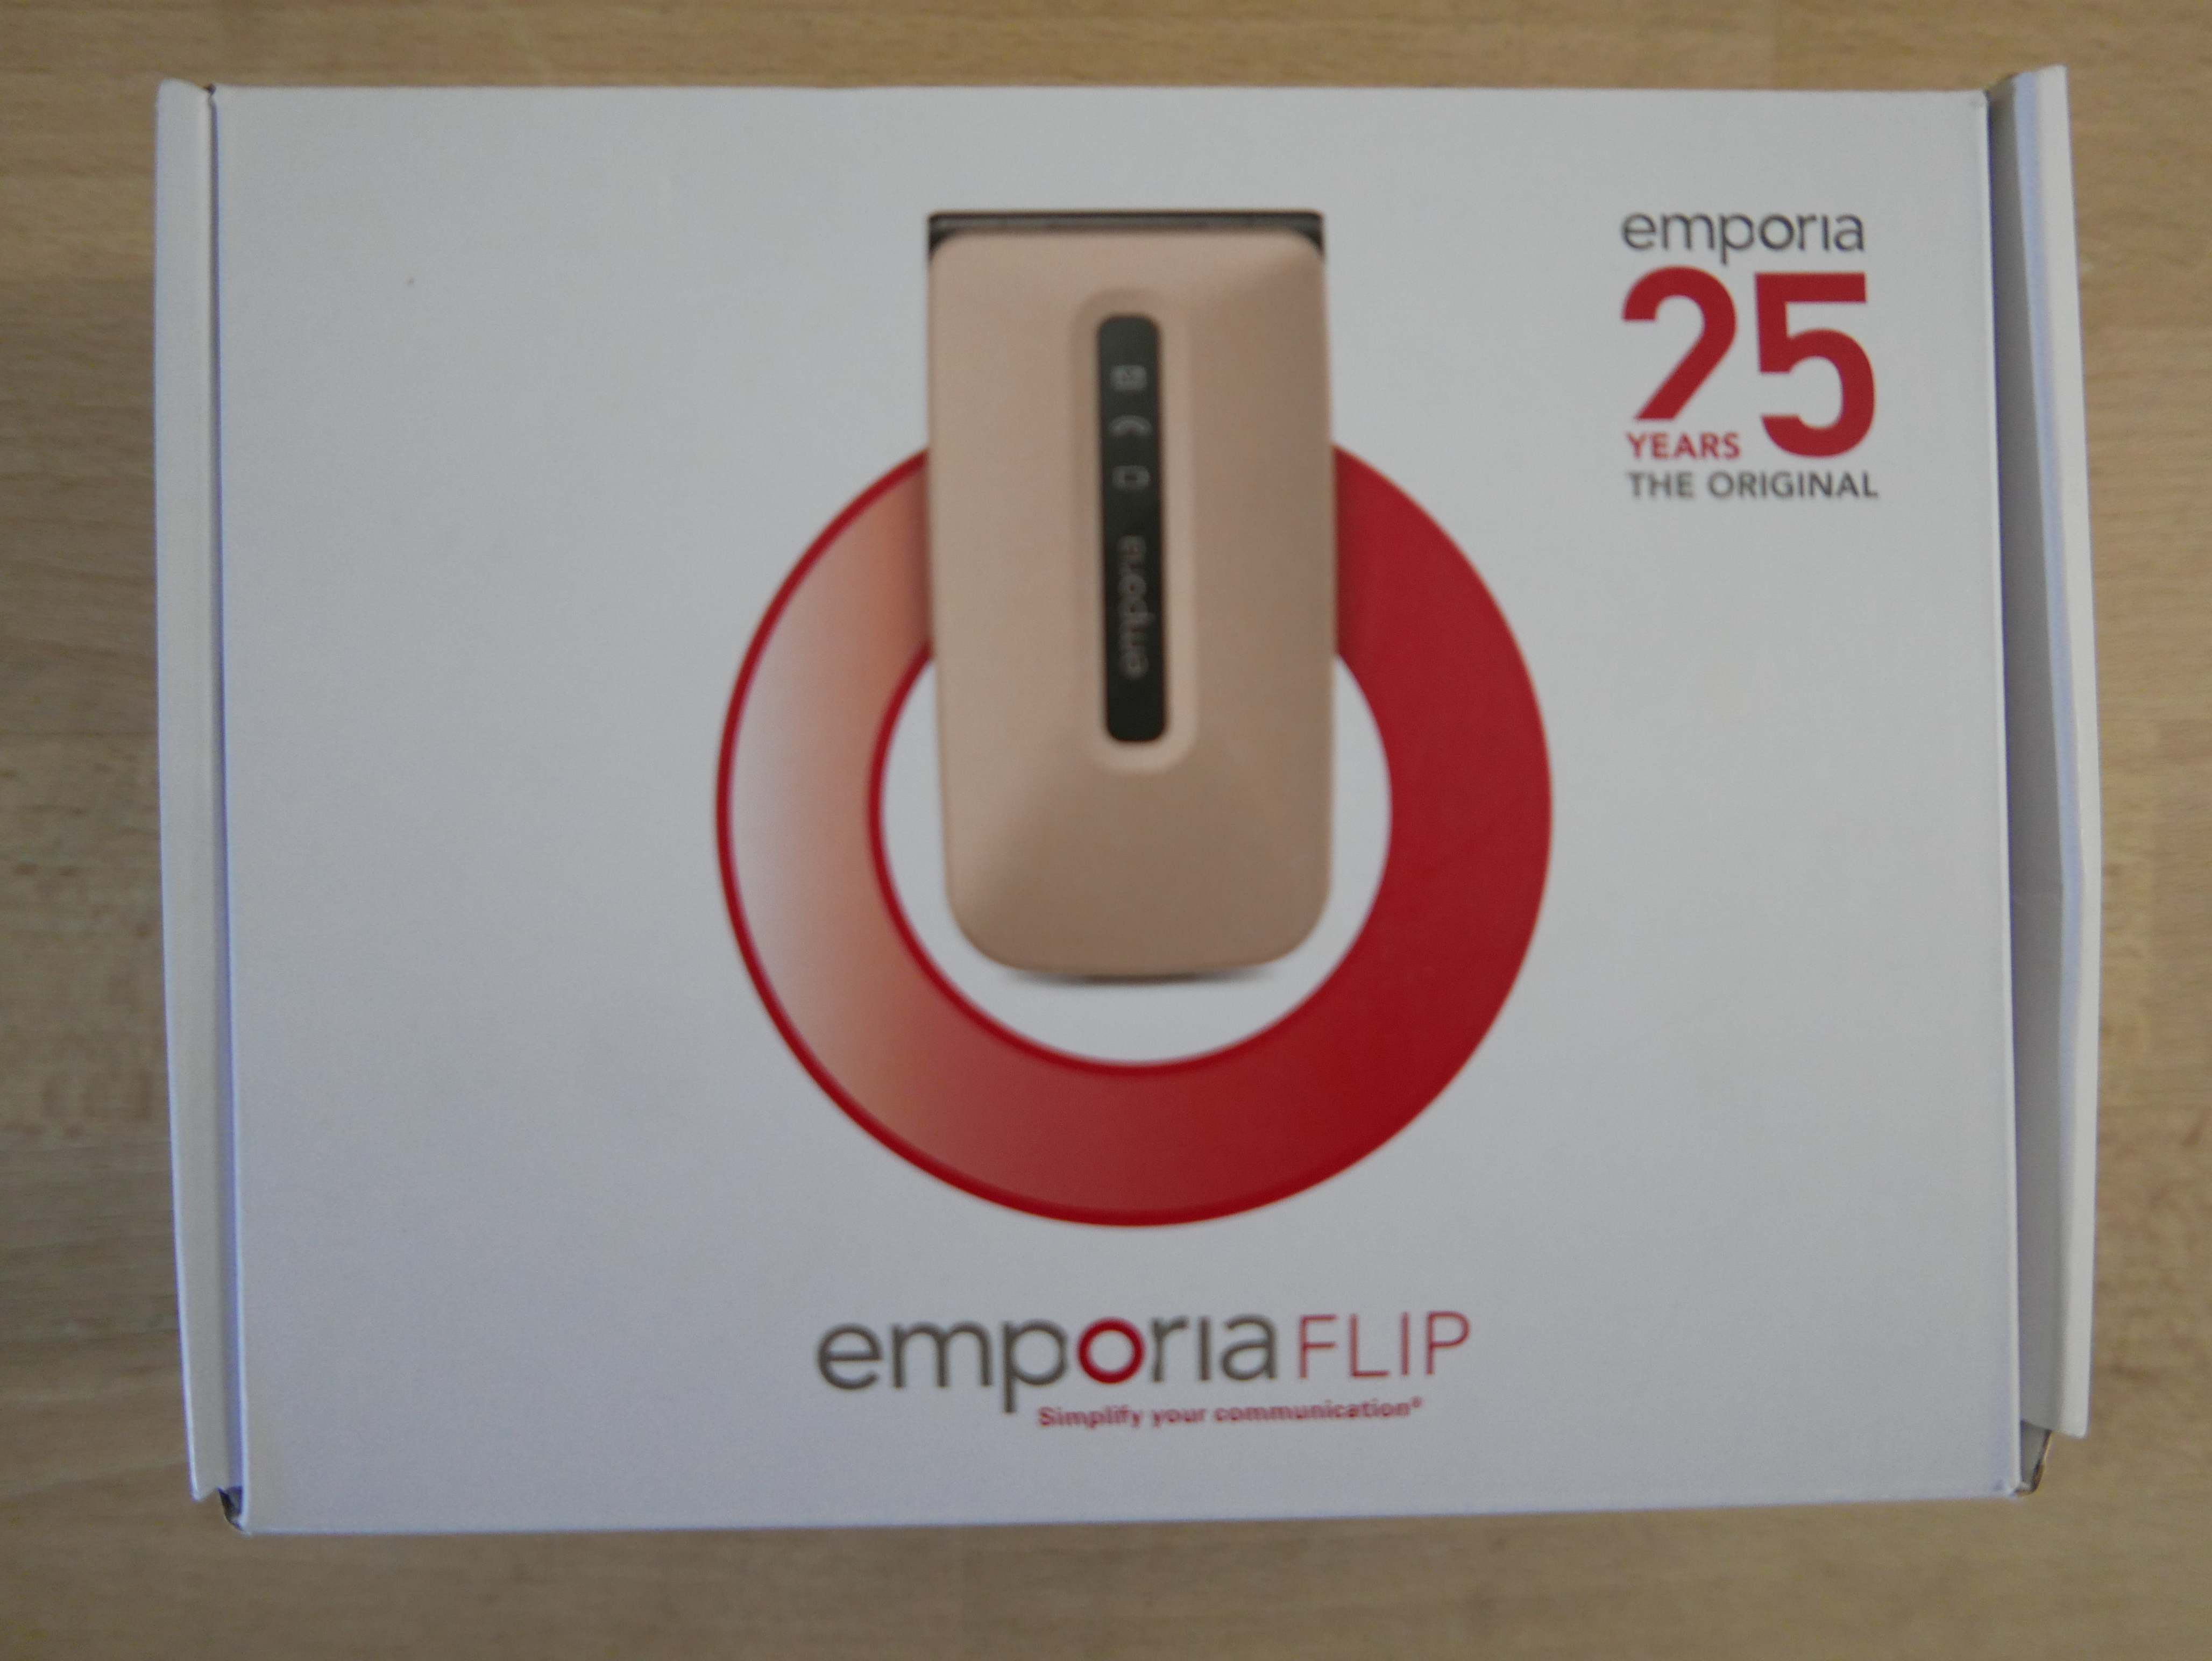 Emporia Flip senioren telefoon 